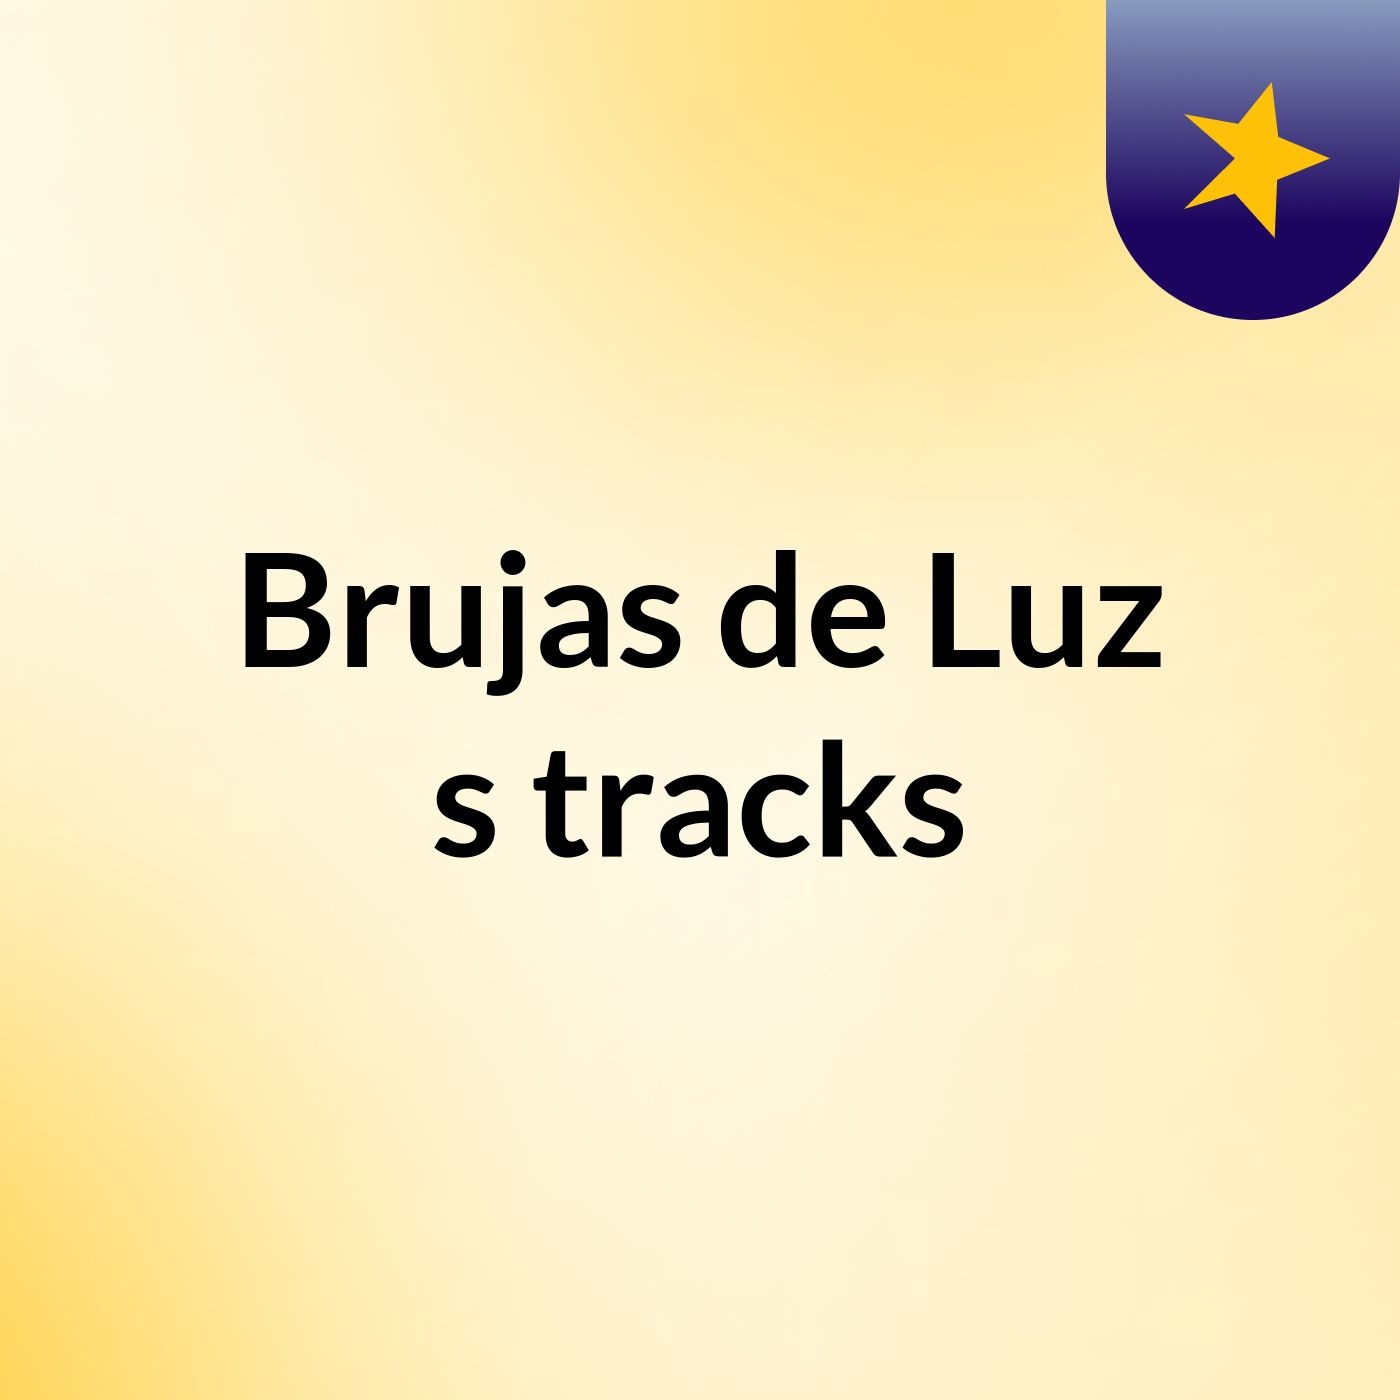 Brujas de Luz's tracks